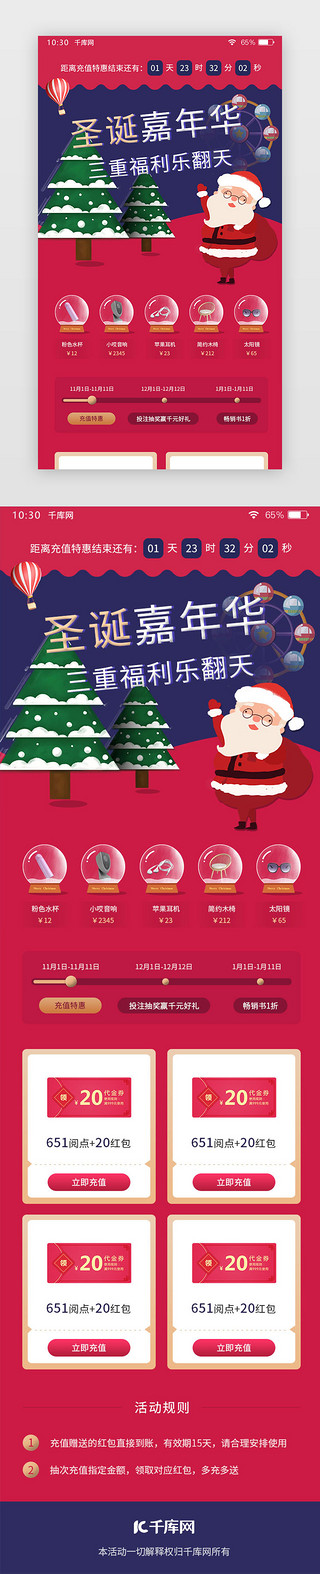 圣诞节活动UI设计素材_圣诞节红色通用活动页